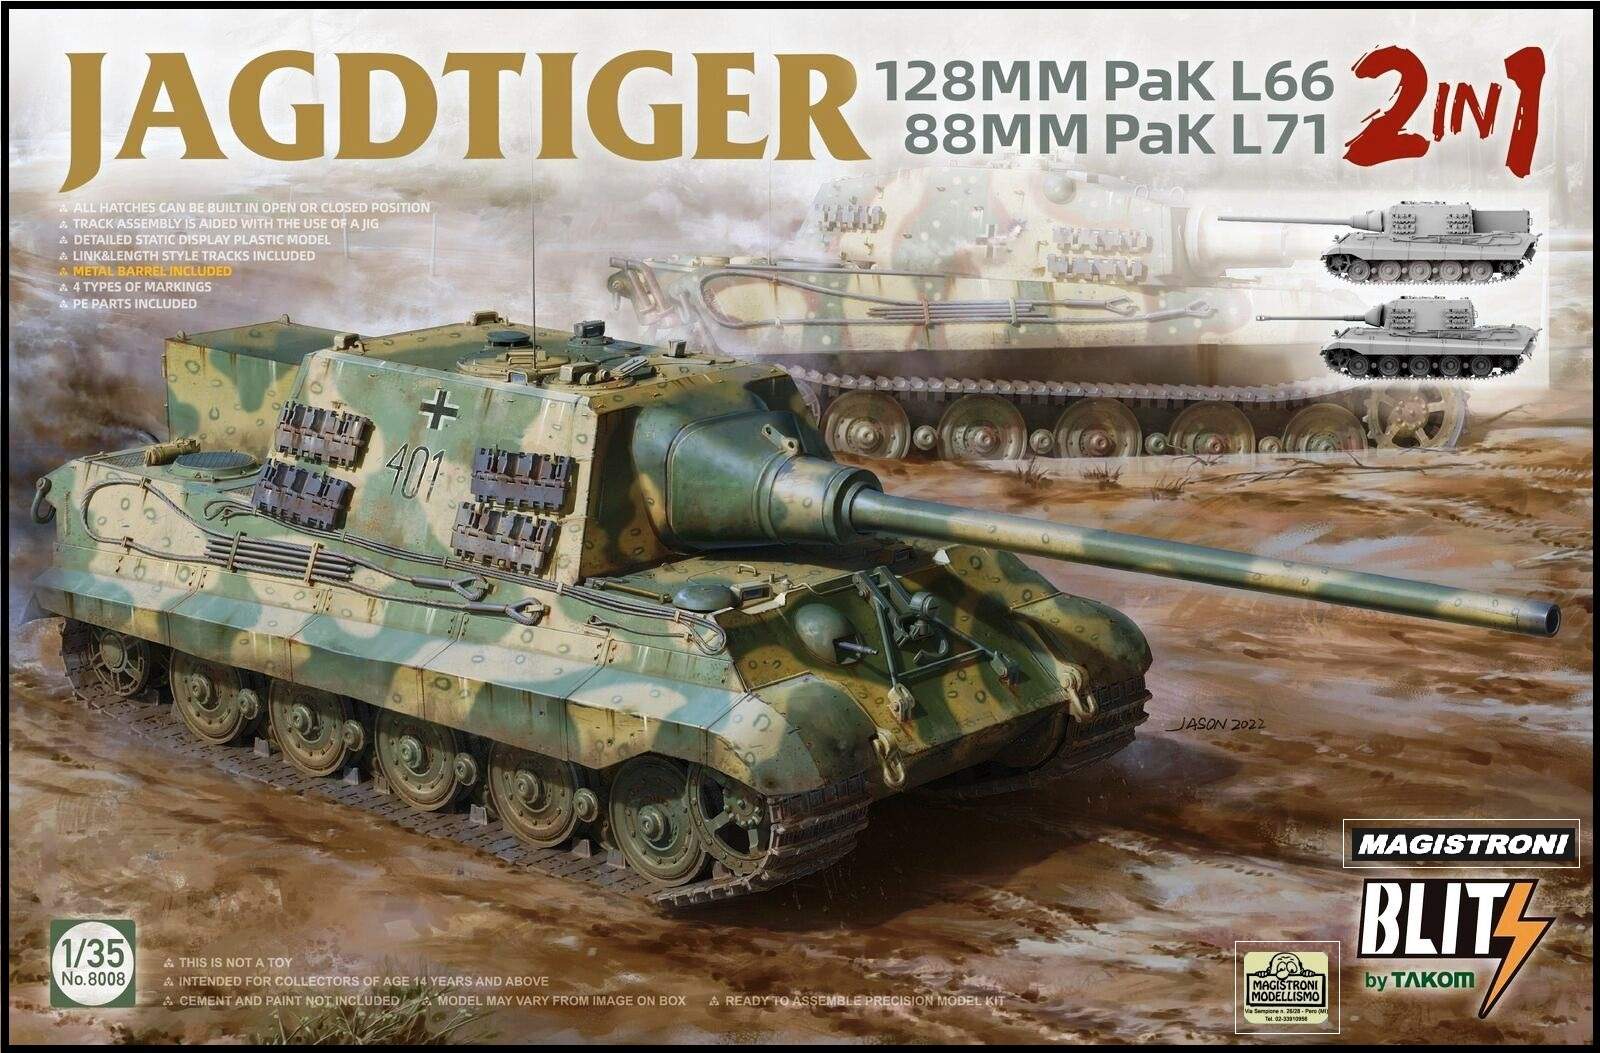 JAGDTIGER 128mm Pak L66/ 88mm Pak L71 2 in 1